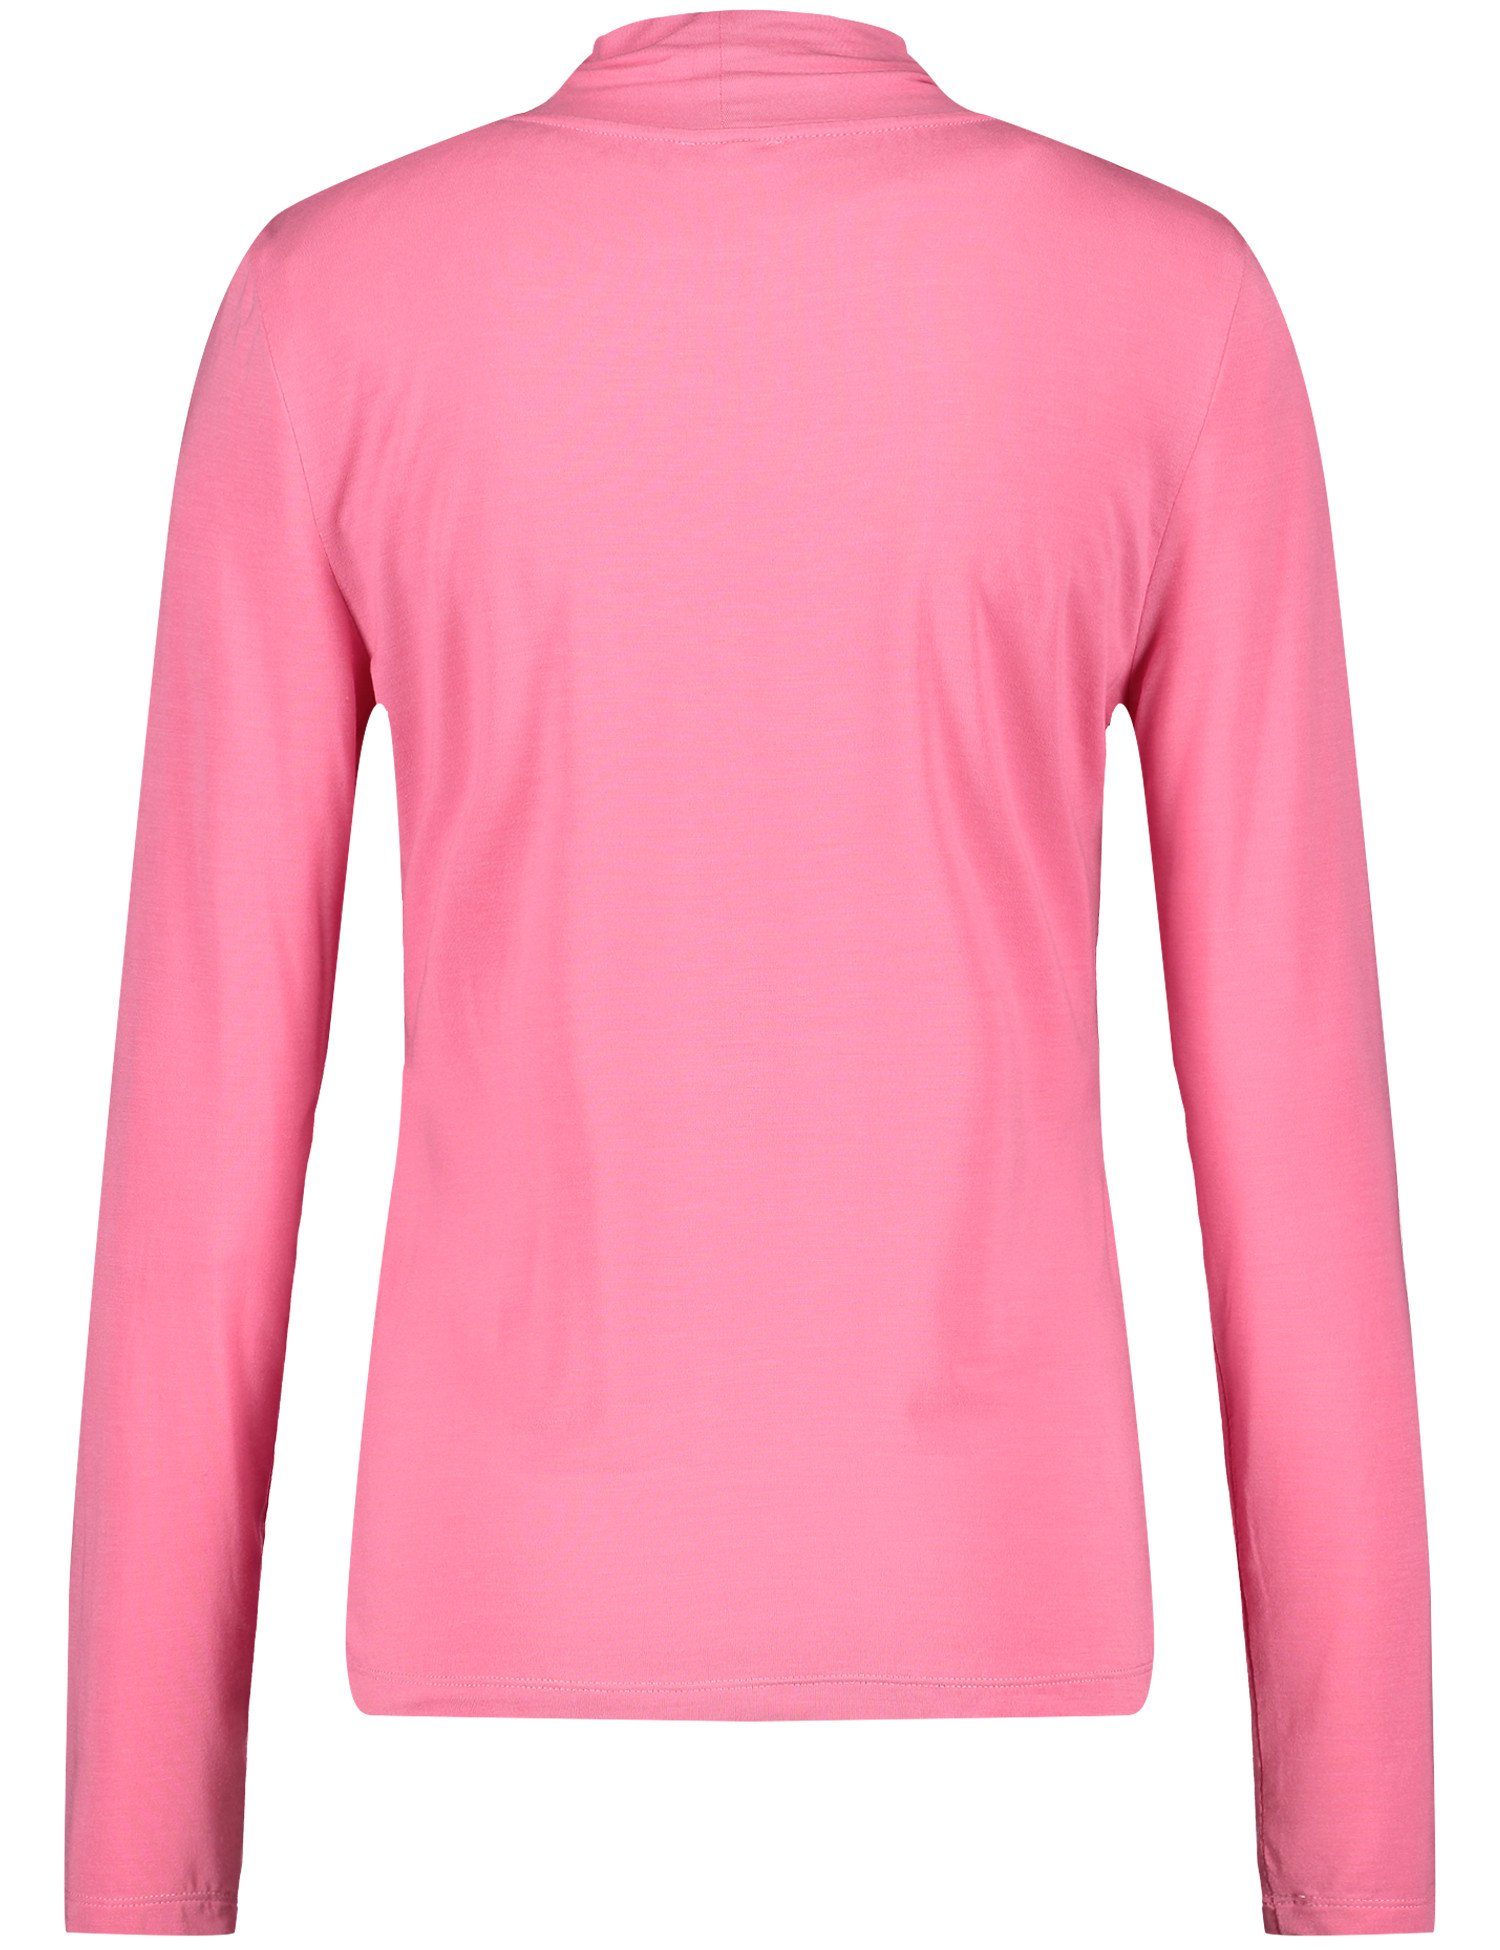 WEBER ROSE 30894 GERRY PINK T-Shirt